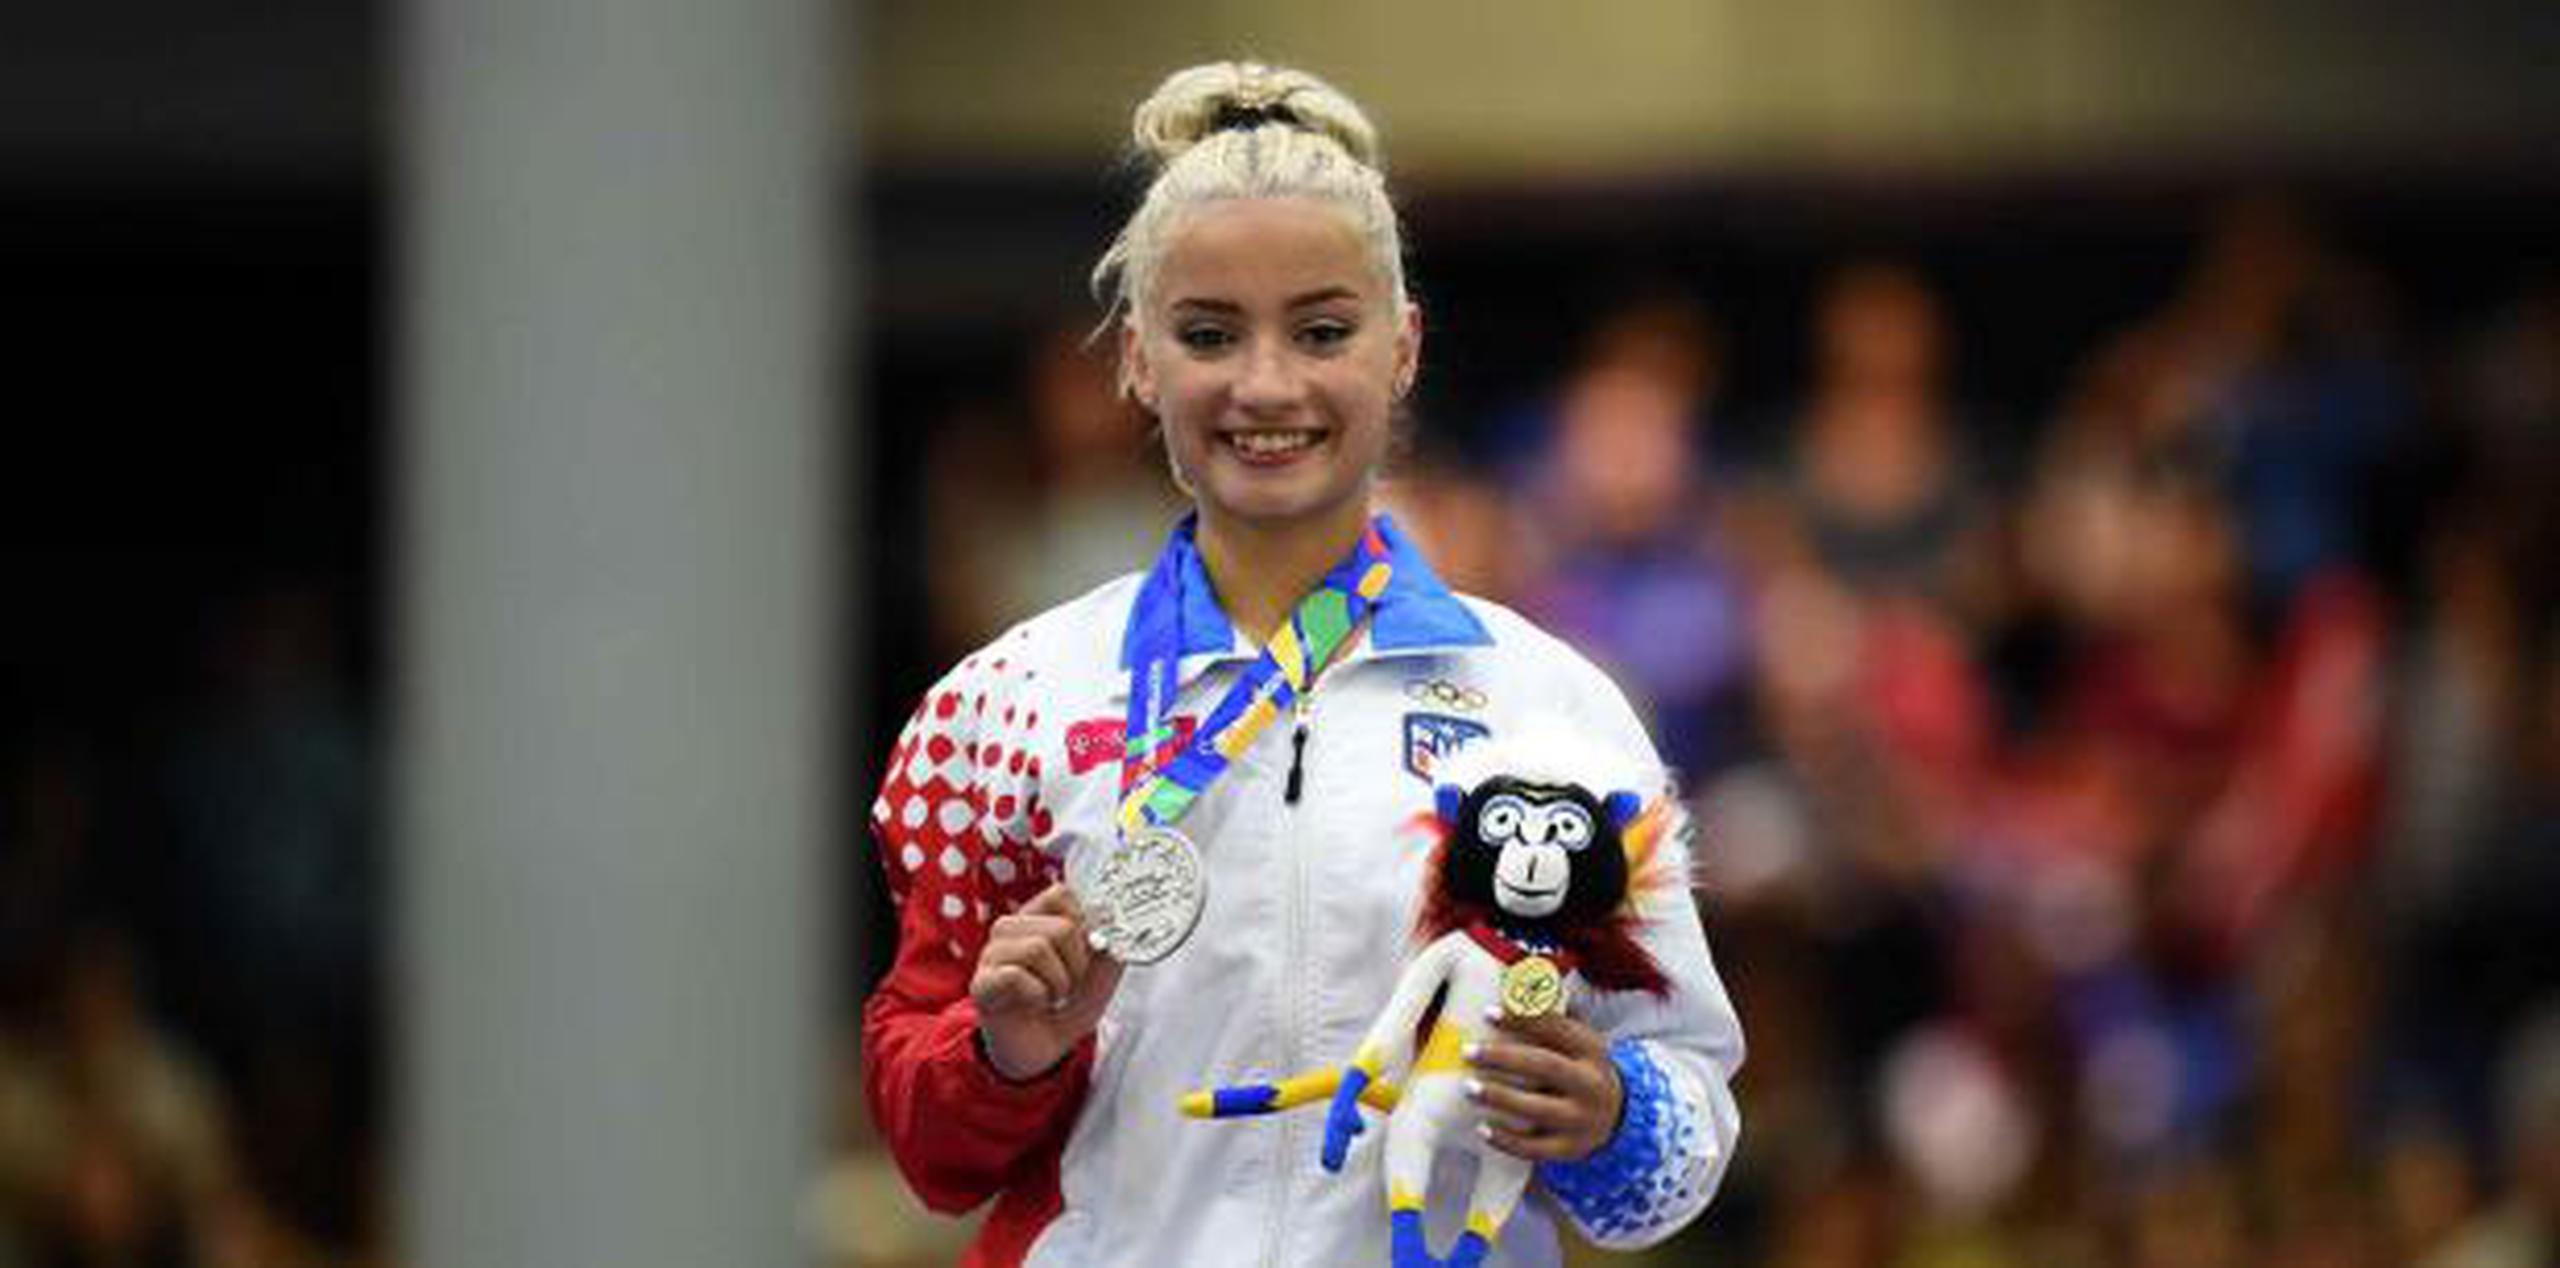 Andrea Paola Maldonado, medallista de plata. (Andre Kang / andre.kang@gfrmedia.com)